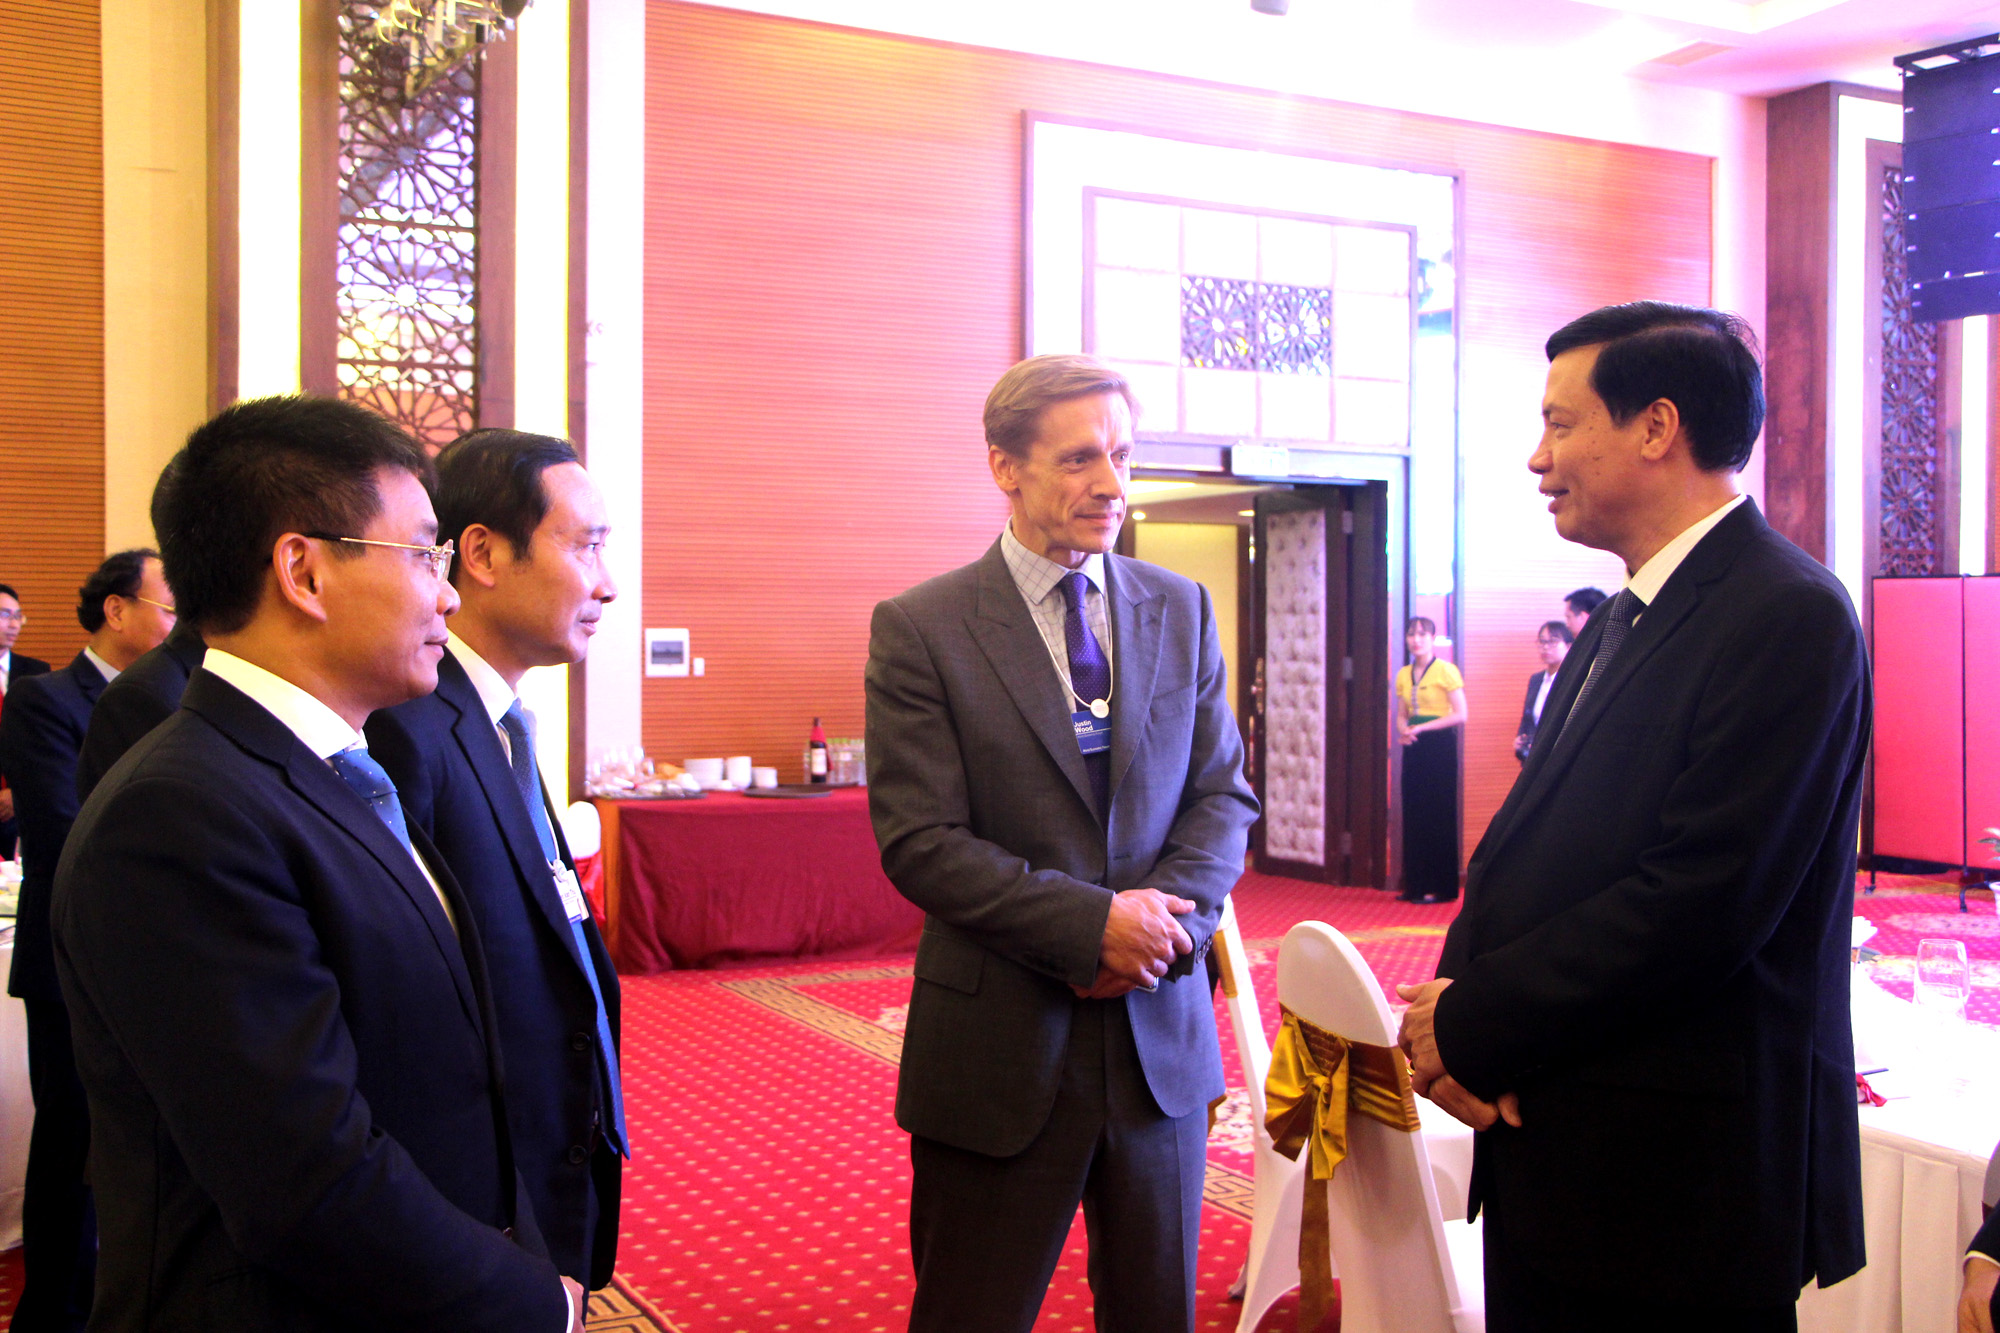 Đồng chí Nguyễn Đức Long, Phó Bí thư Tỉnh ủy, Chủ tịch UBND tỉnh, trò chuyện cùng thành viên Đoàn đại biểu.